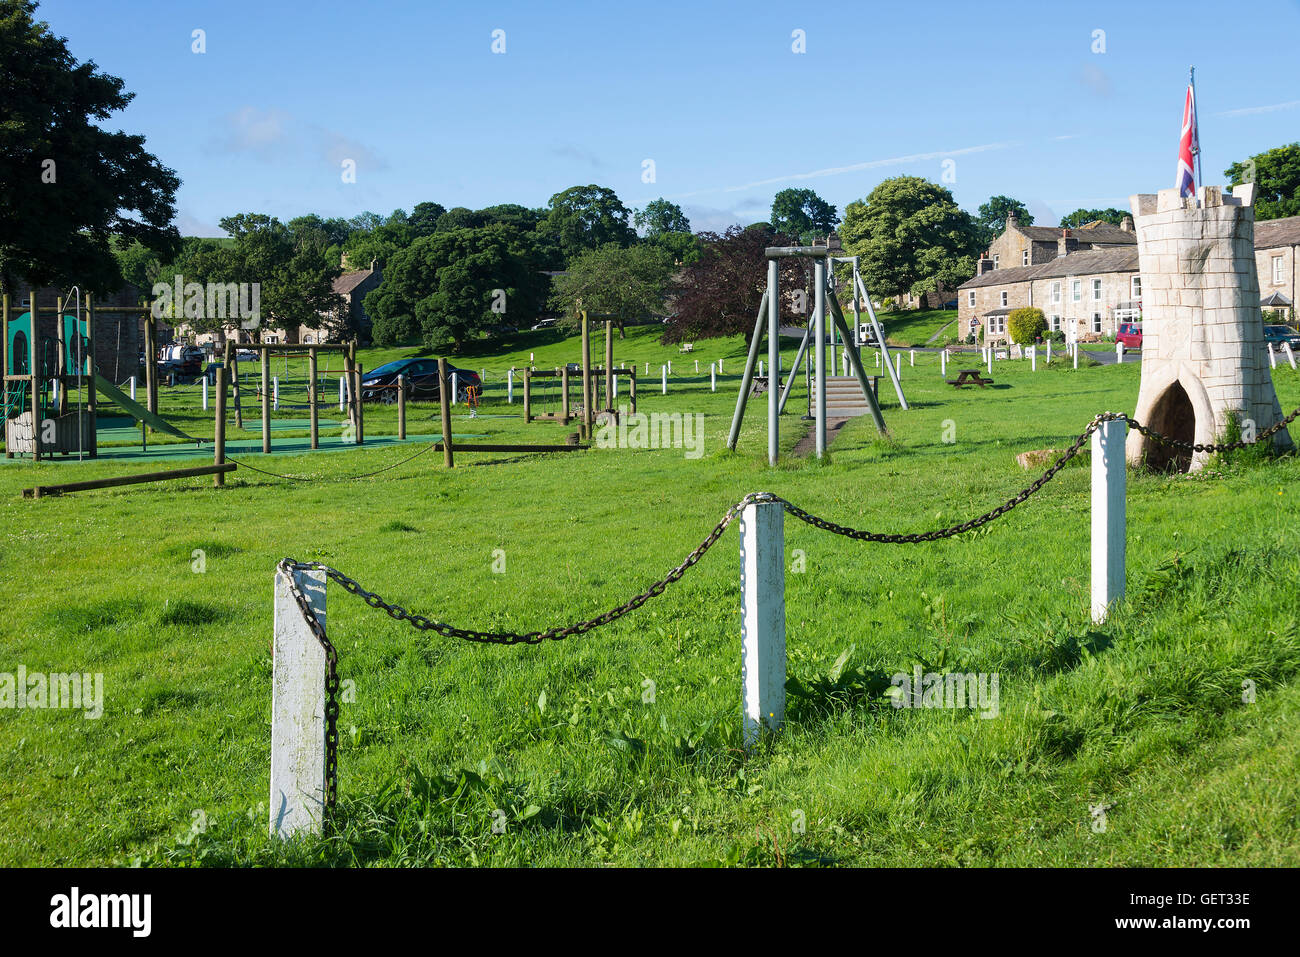 Kinderspielplatz auf dem Dorf Grün in Bainbridge Yorkshire Dales National Park England Vereinigtes Königreich Großbritannien Stockfoto